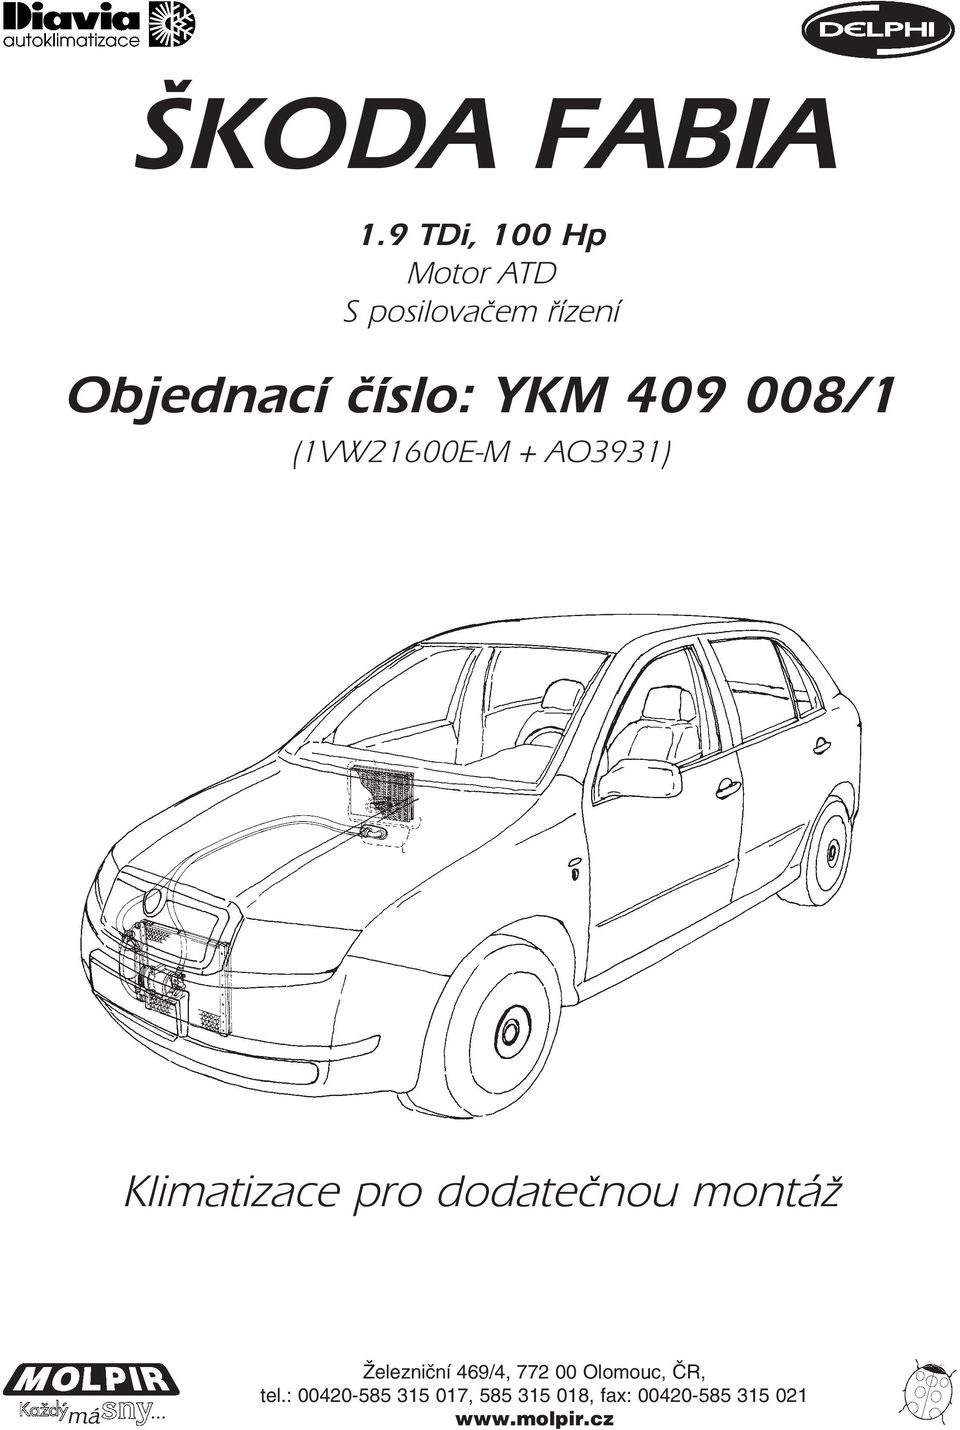 ŠKODA FABIA 1.9 TDi, 100 Hp Motor ATD S posilovačem řízení - PDF Free  Download